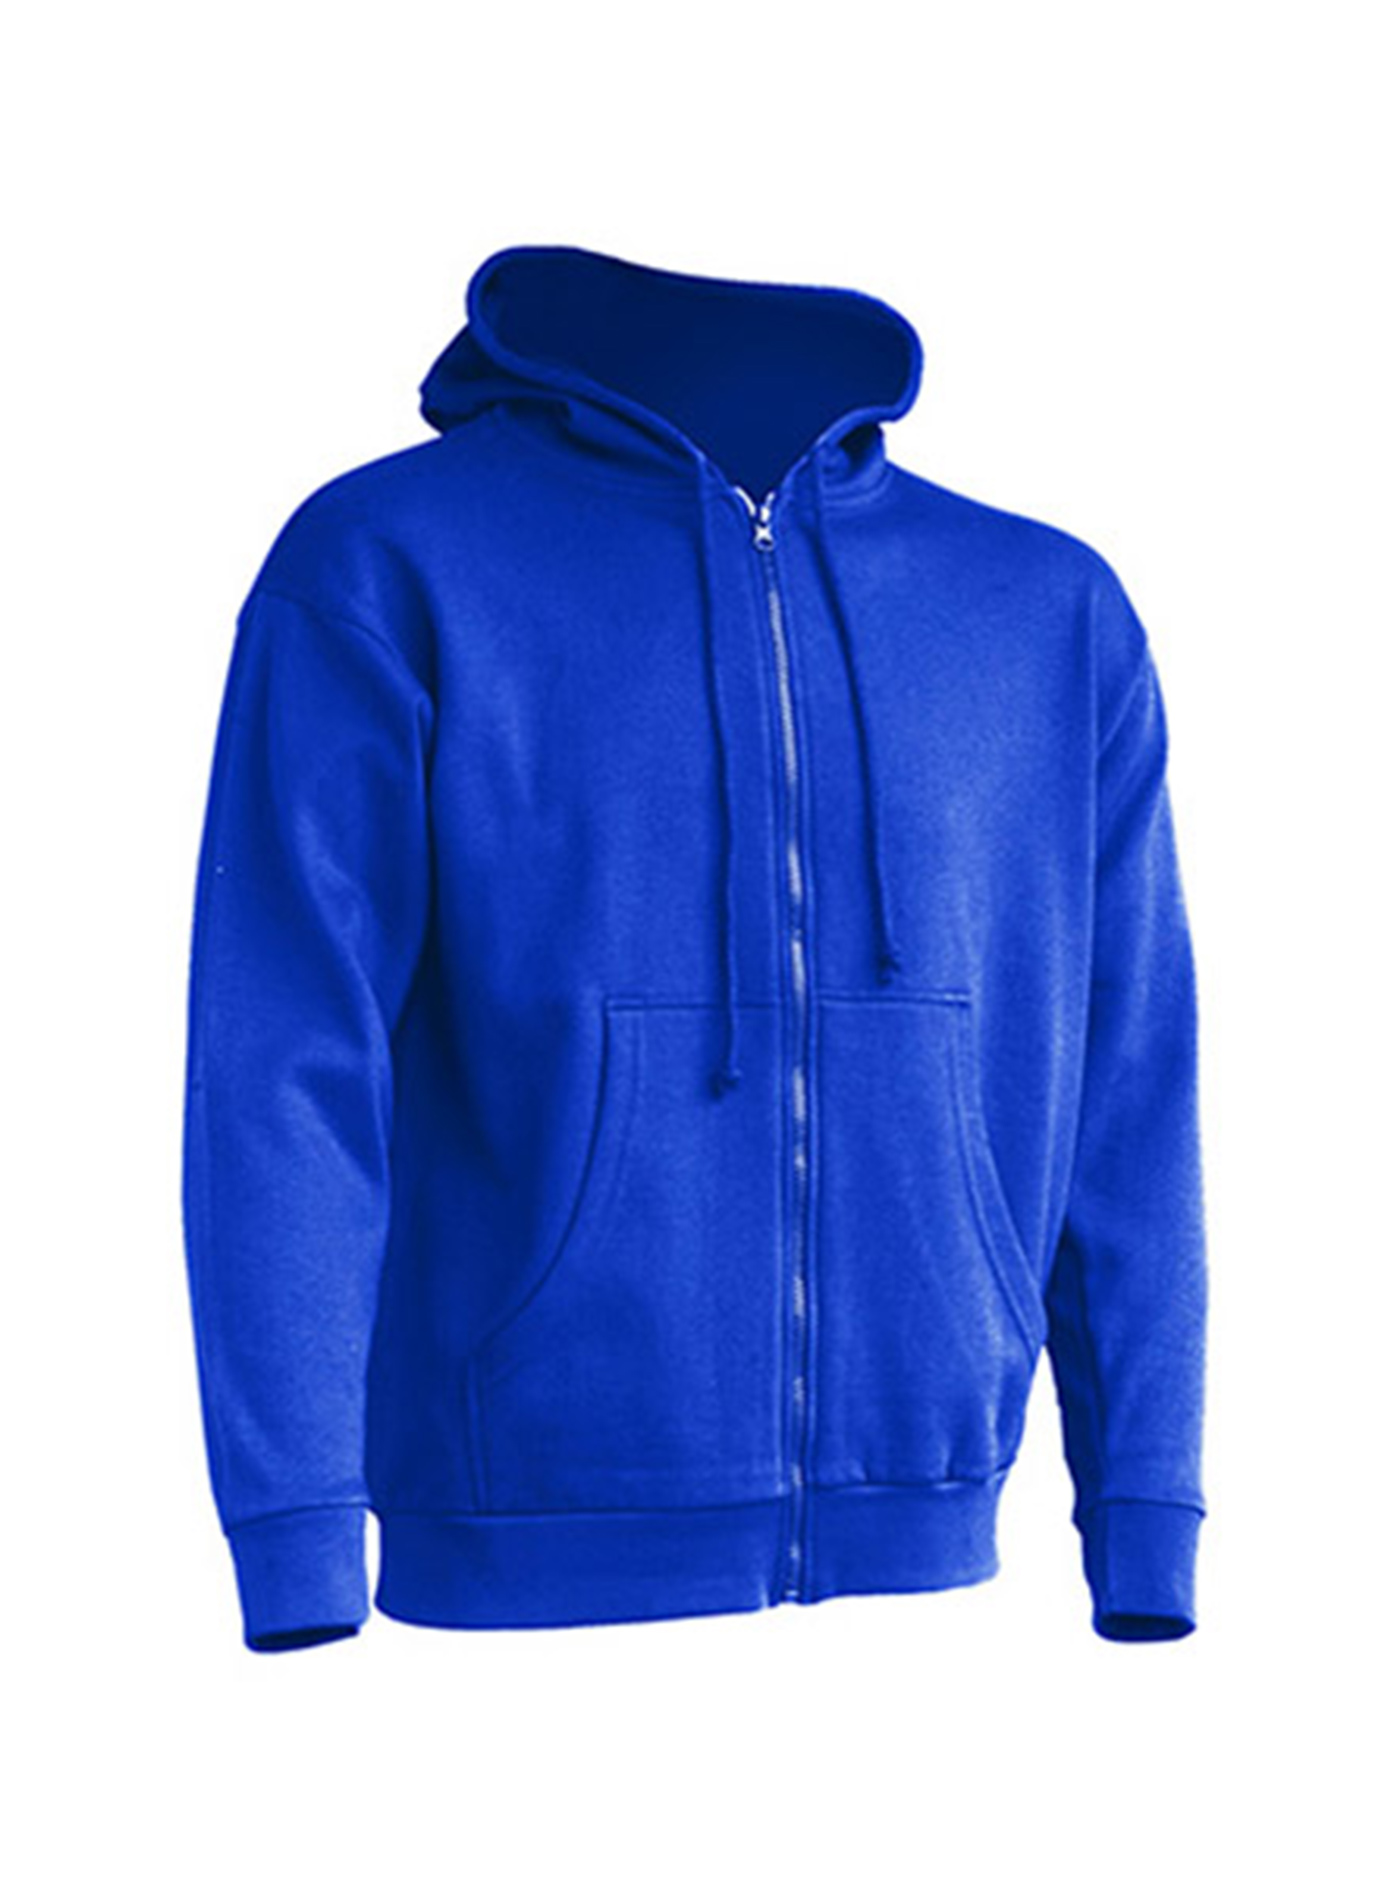 Pánská mikina na zip JHK Hooded - královská modrá XL